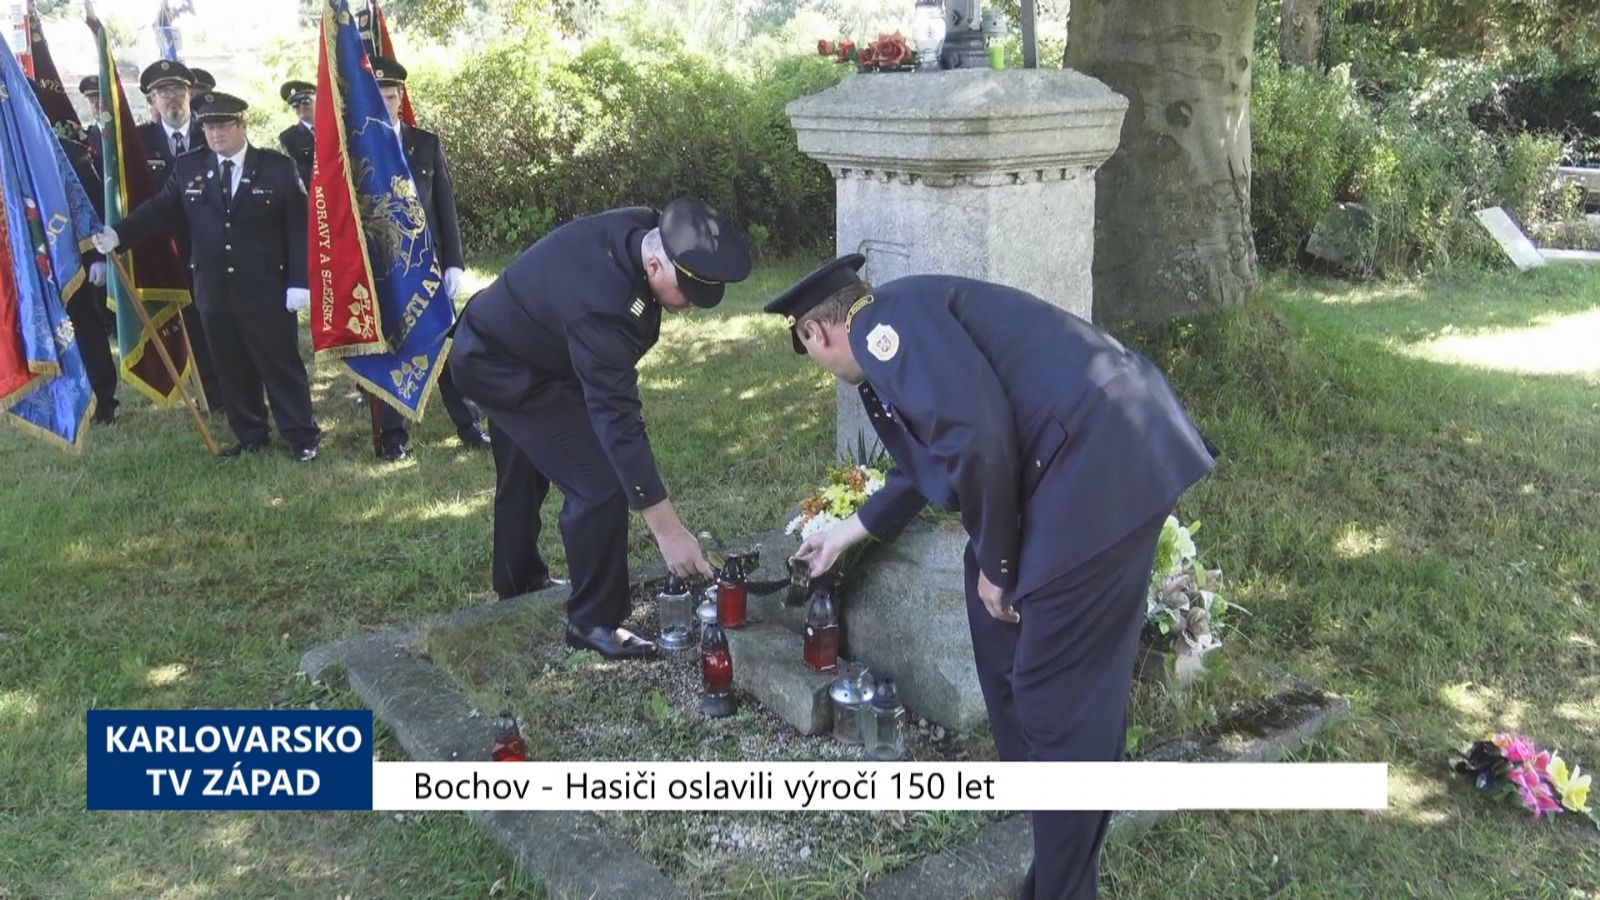 Bochov: Hasiči oslavili výročí 150 let (TV Západ)